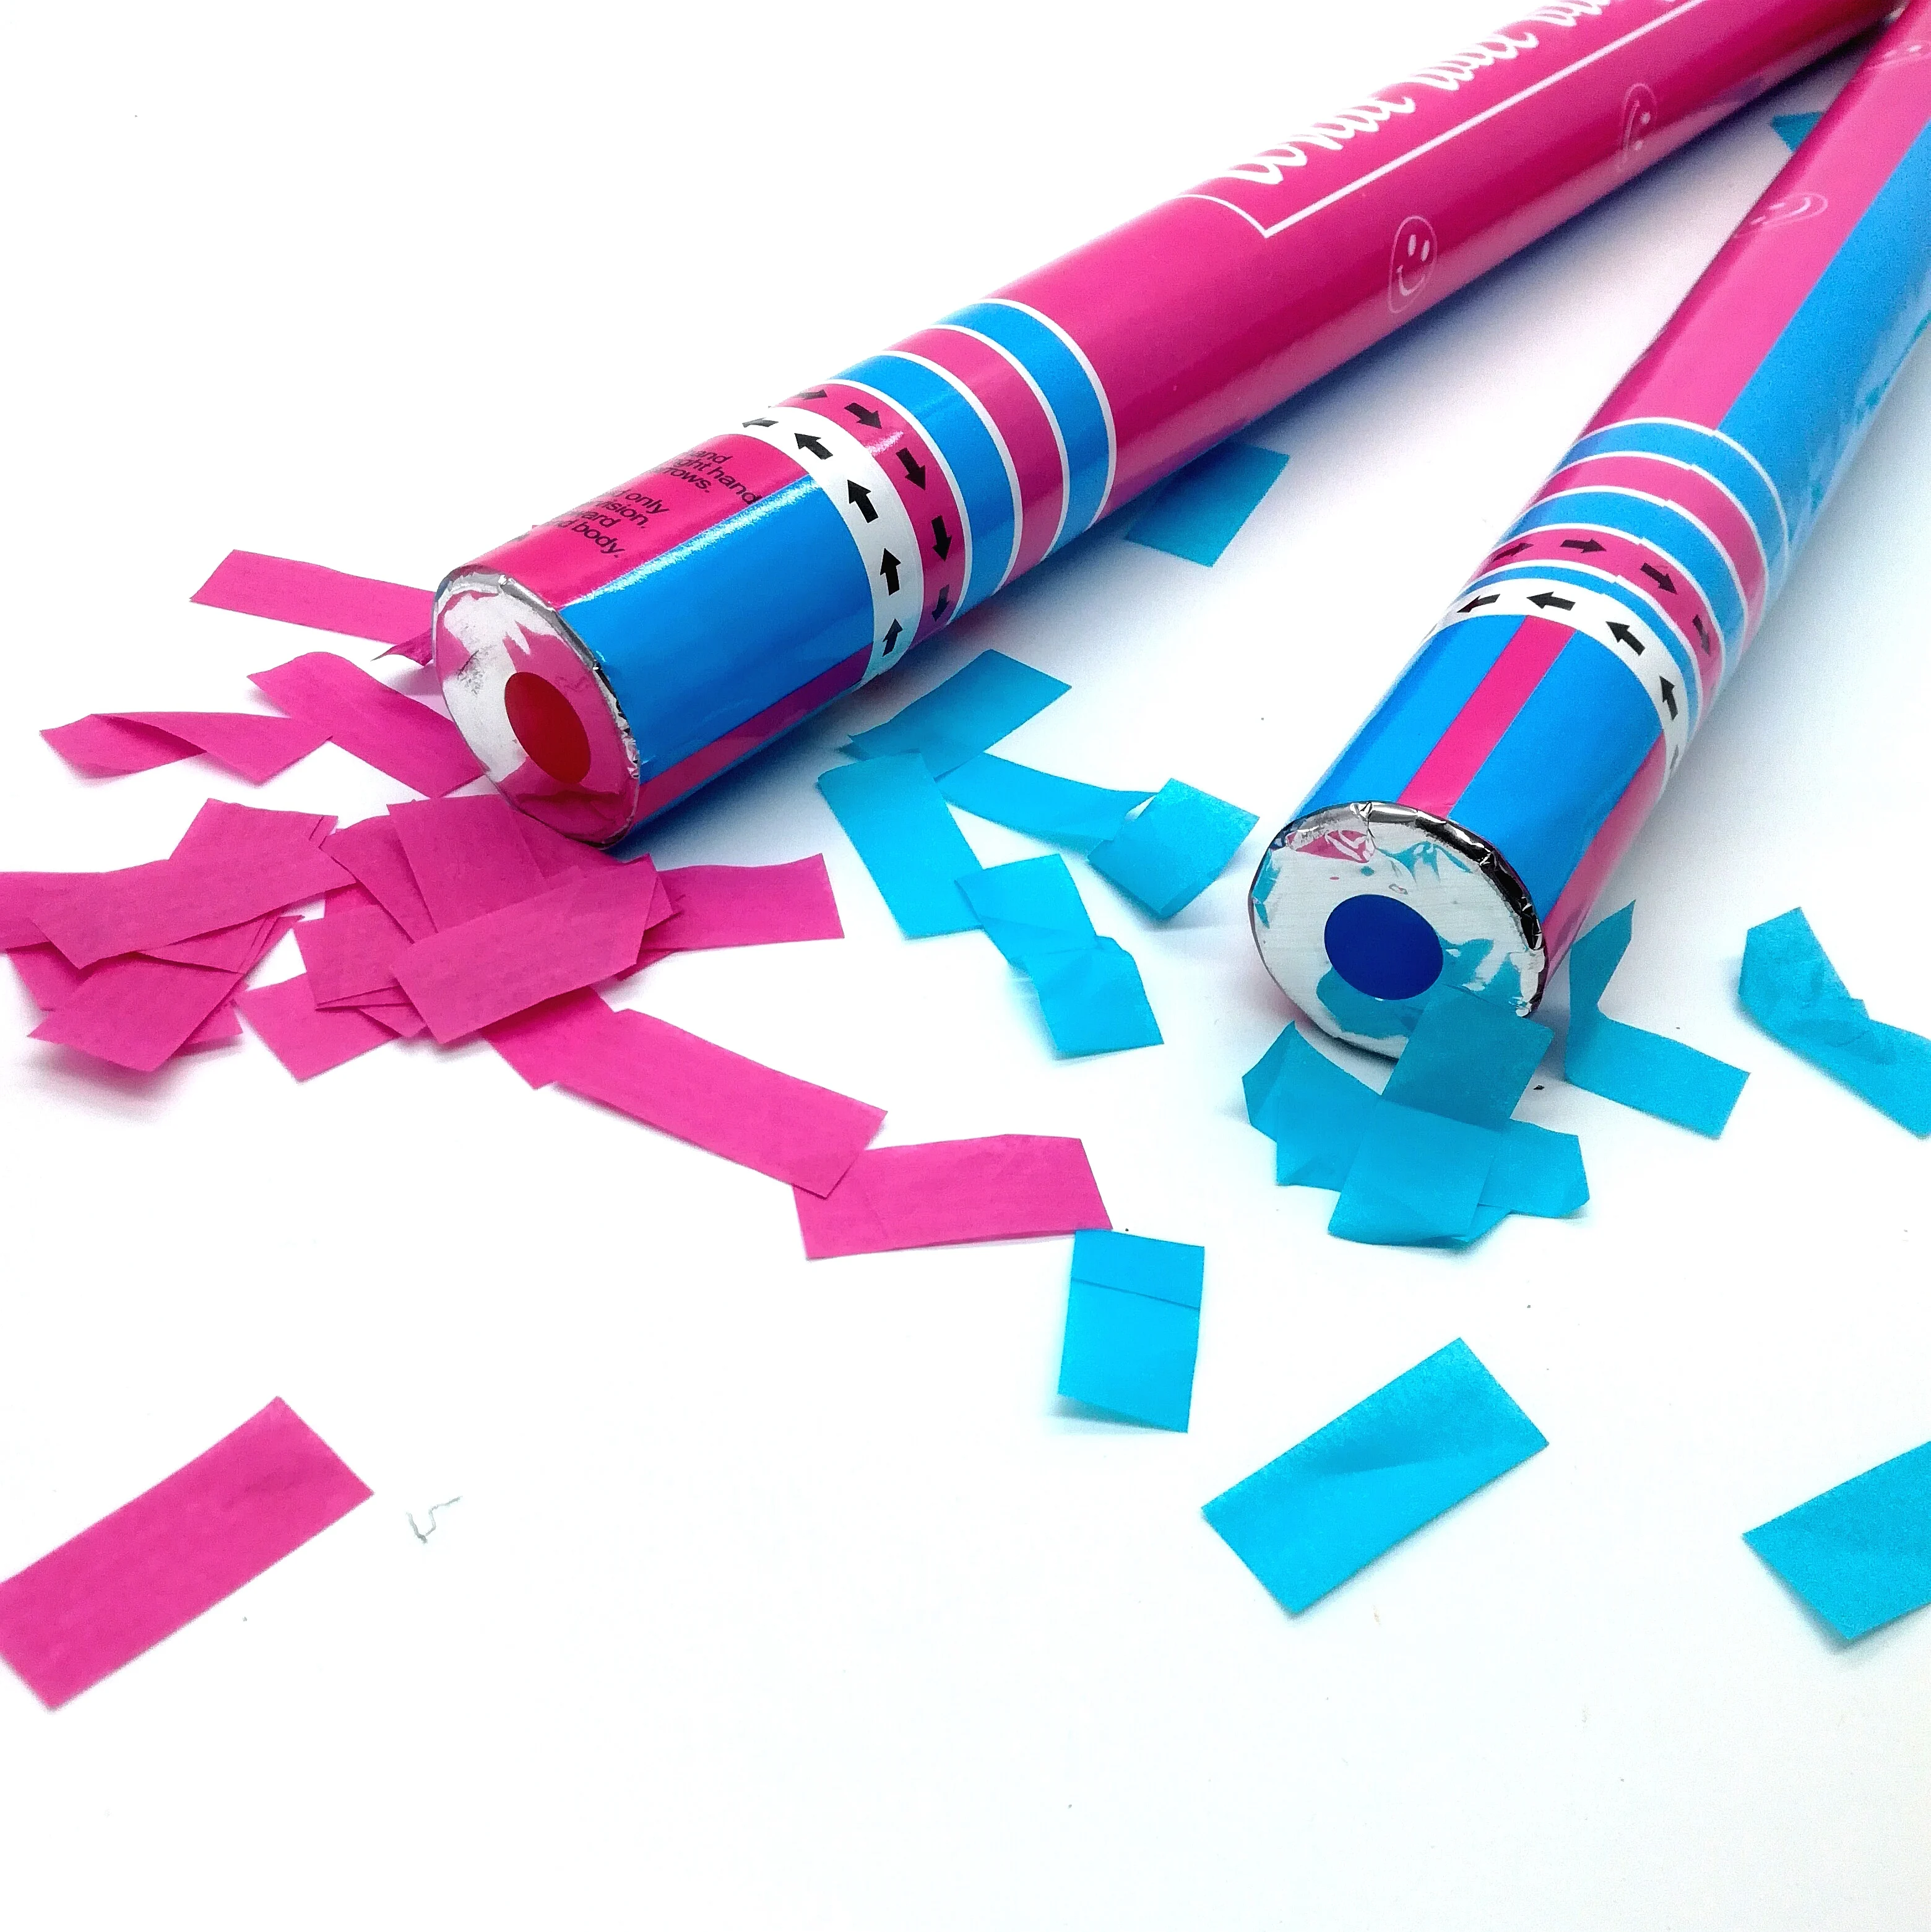 Бумага конфетти. Бумажное конфетти пушка. Конфетти розовое и голубое. Как сделать конфетти из бумаги. Конфетти из бумаги